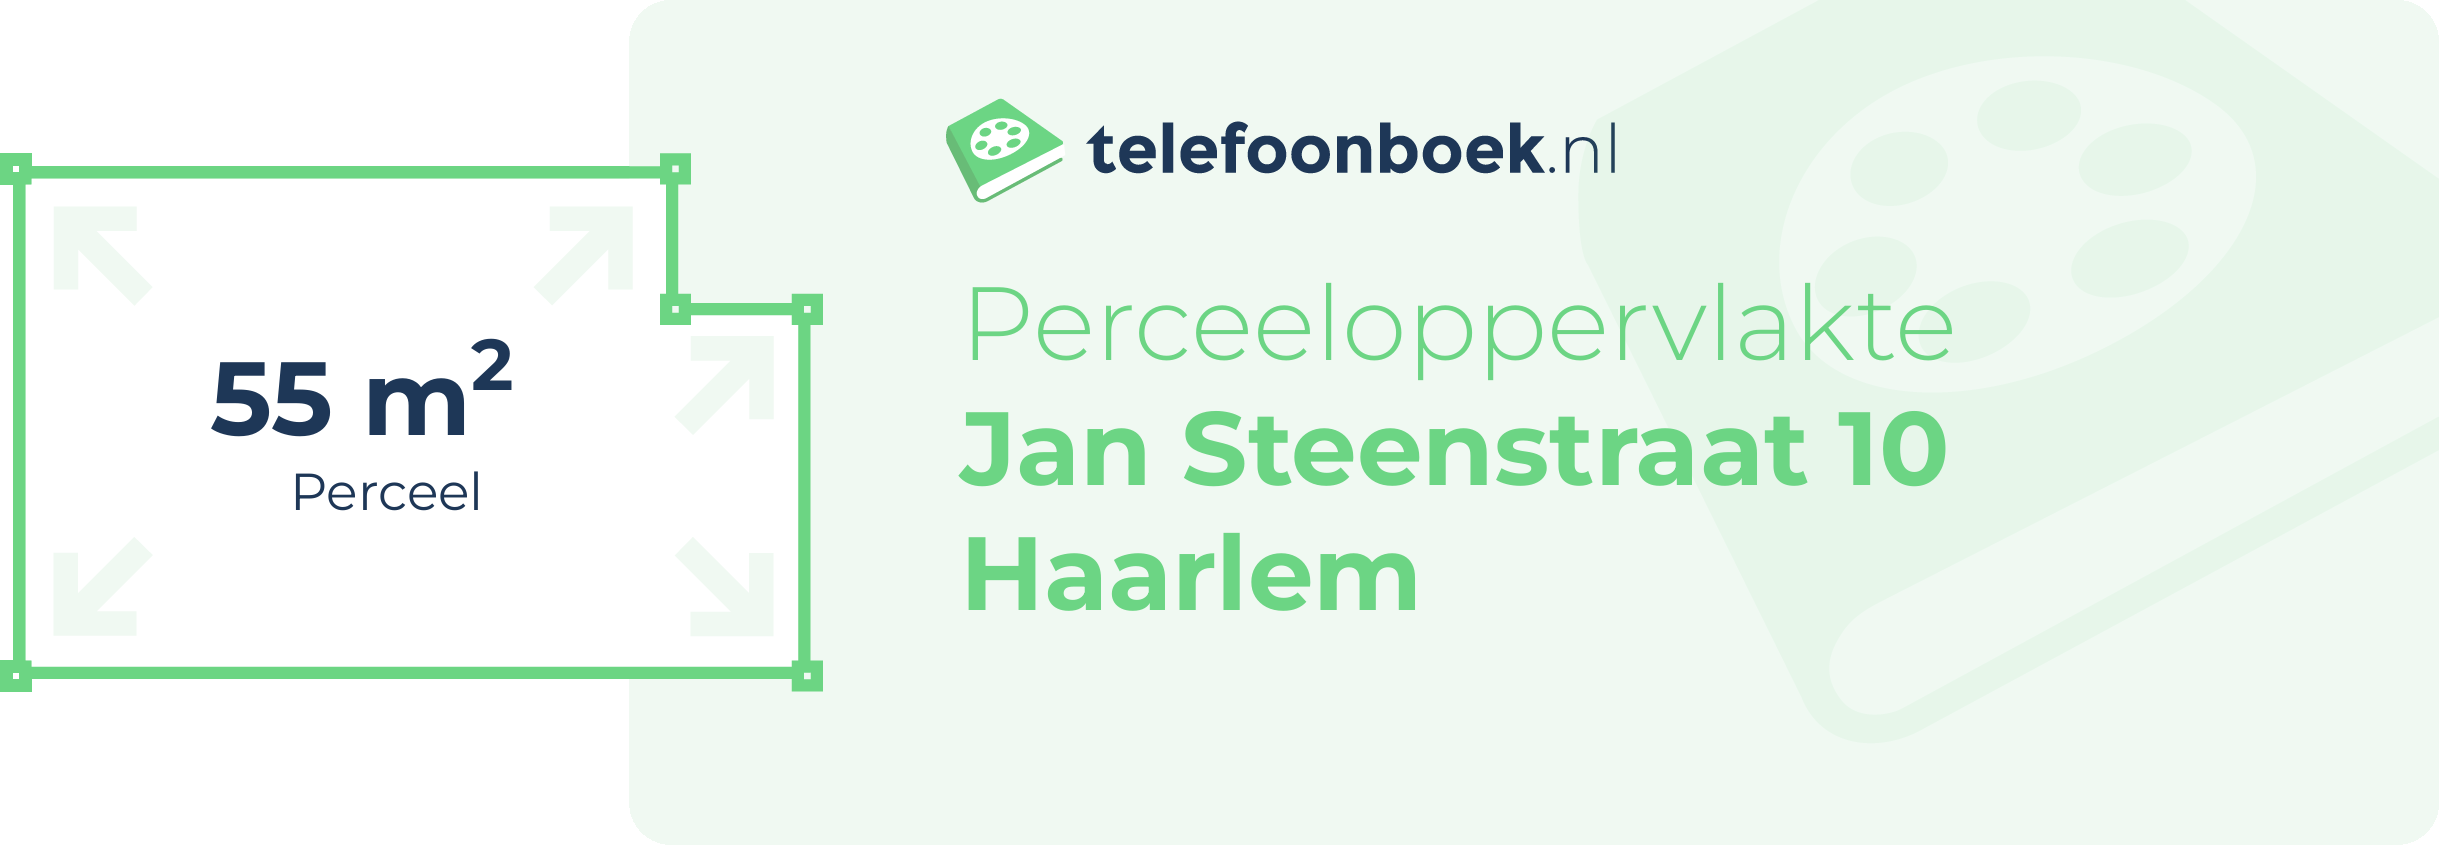 Perceeloppervlakte Jan Steenstraat 10 Haarlem